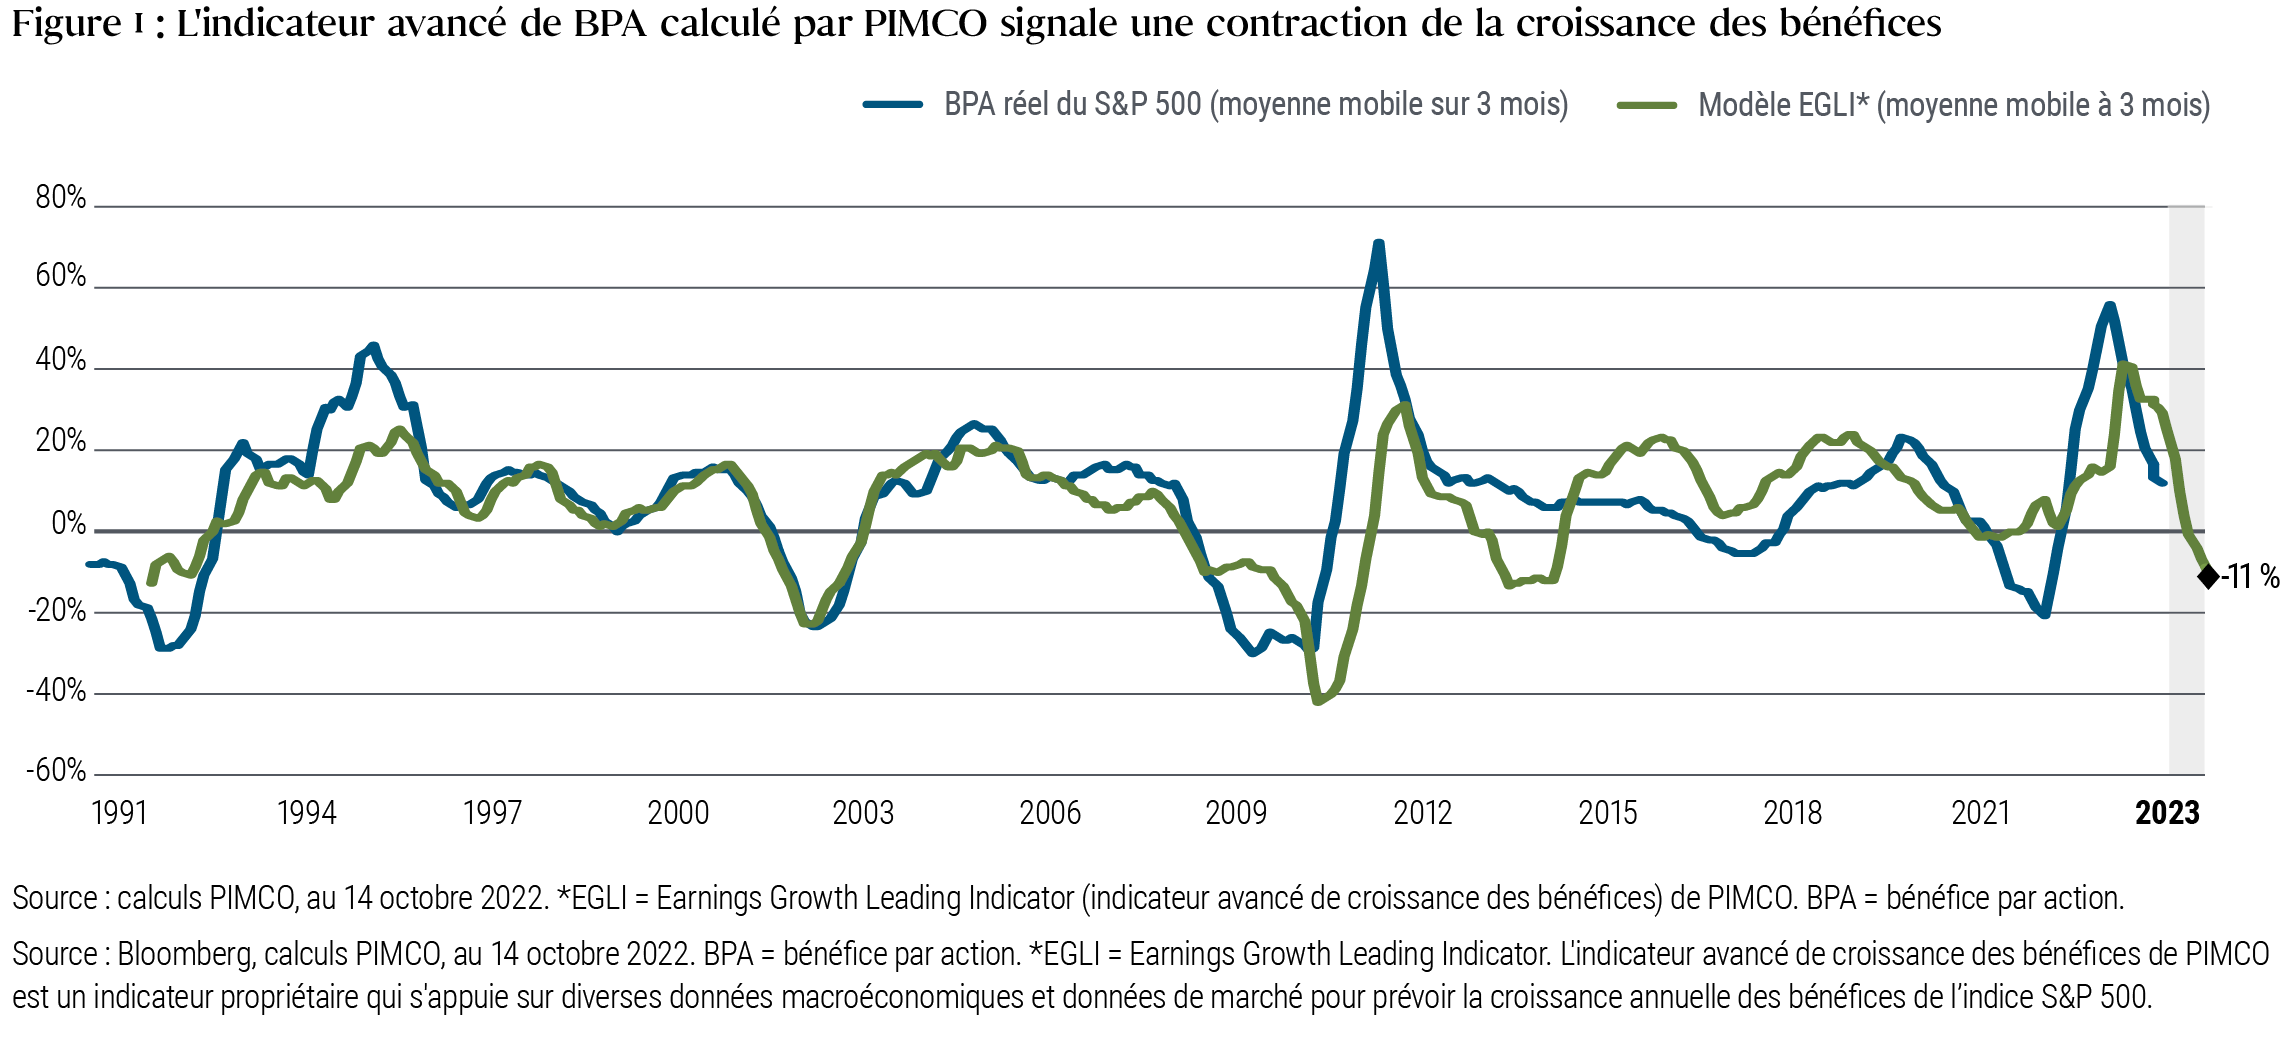 La Figure 1 est un graphique linéaire montrant une série chronologique de la moyenne mobile sur trois mois des bénéfices par action (BPA) du S&P 500 et la moyenne mobile sur trois mois de l'indicateur avancé de croissance des bénéfices (EGLI) de PIMCO sur les trois dernières décennies. Le graphique montre que l'indice EGLI suggère une contraction de -11 % de la croissance des bénéfices en 2023. Sur cette période, le BPA réel du S&P a atteint un sommet de plus de 70 % en 2010, peu après être tombé à un creux -30 % fin 2008. Plus récemment, le BPA a chuté à -20 % début 2021, avant de repasser au-dessus de 55 % début 2022, puis de retomber à nouveau. Il y a peu, l'indice EGLI de PIMCO a atteint un pic légèrement inférieur au niveau du BPA, qui s'élevait à 40 % à la mi-2022.